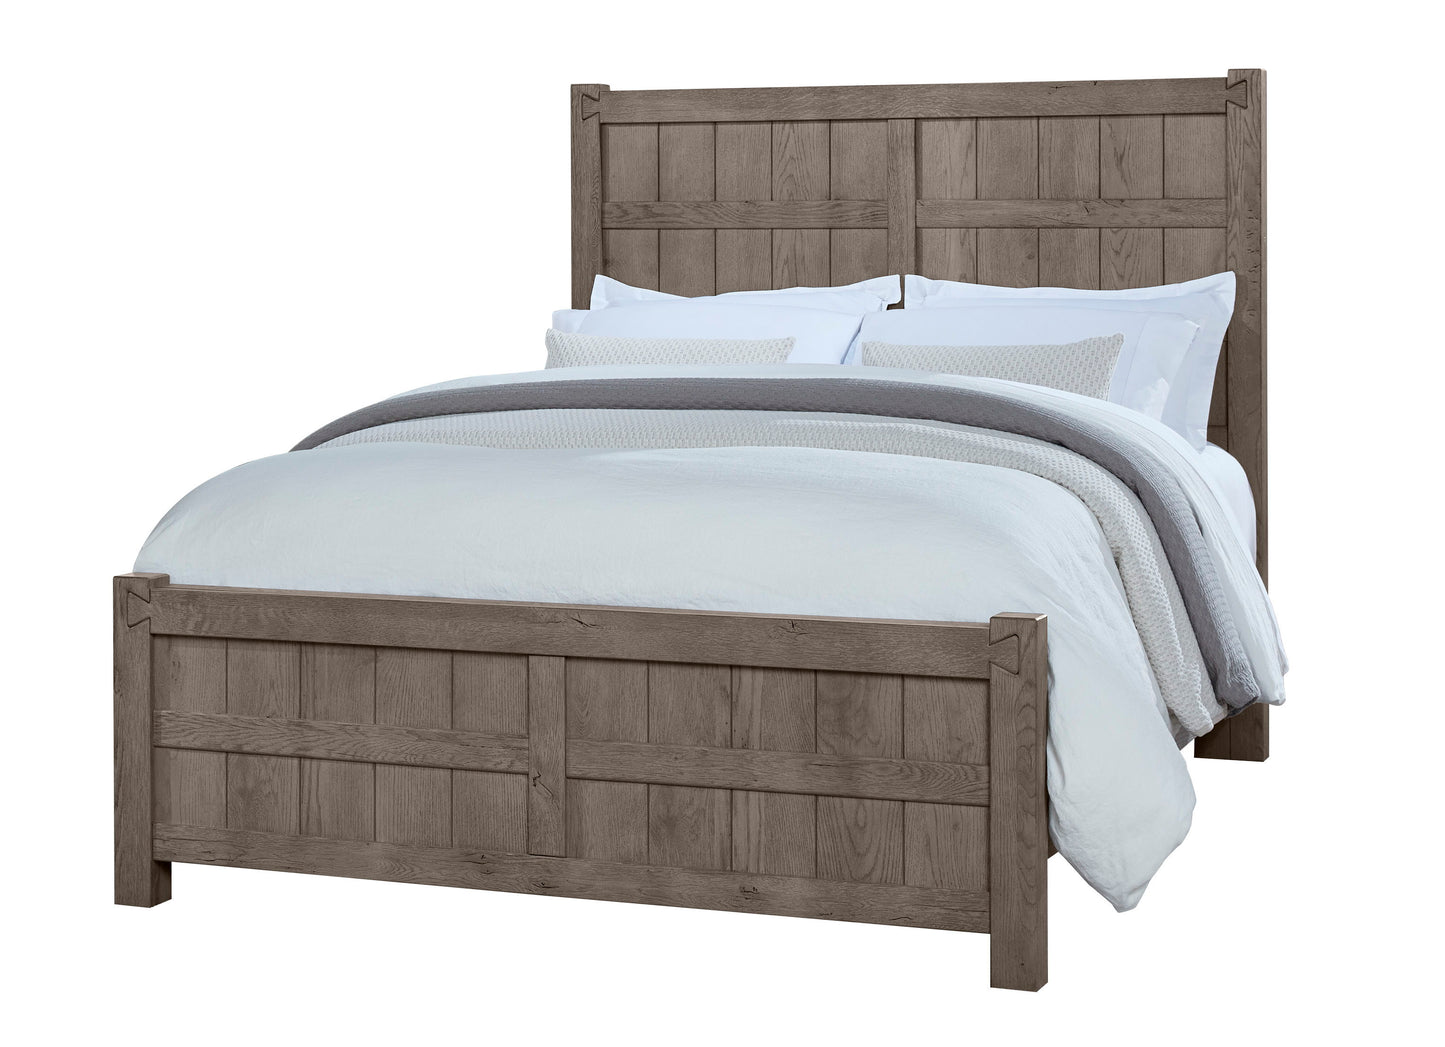 Dovetail - Board & Batten Bed